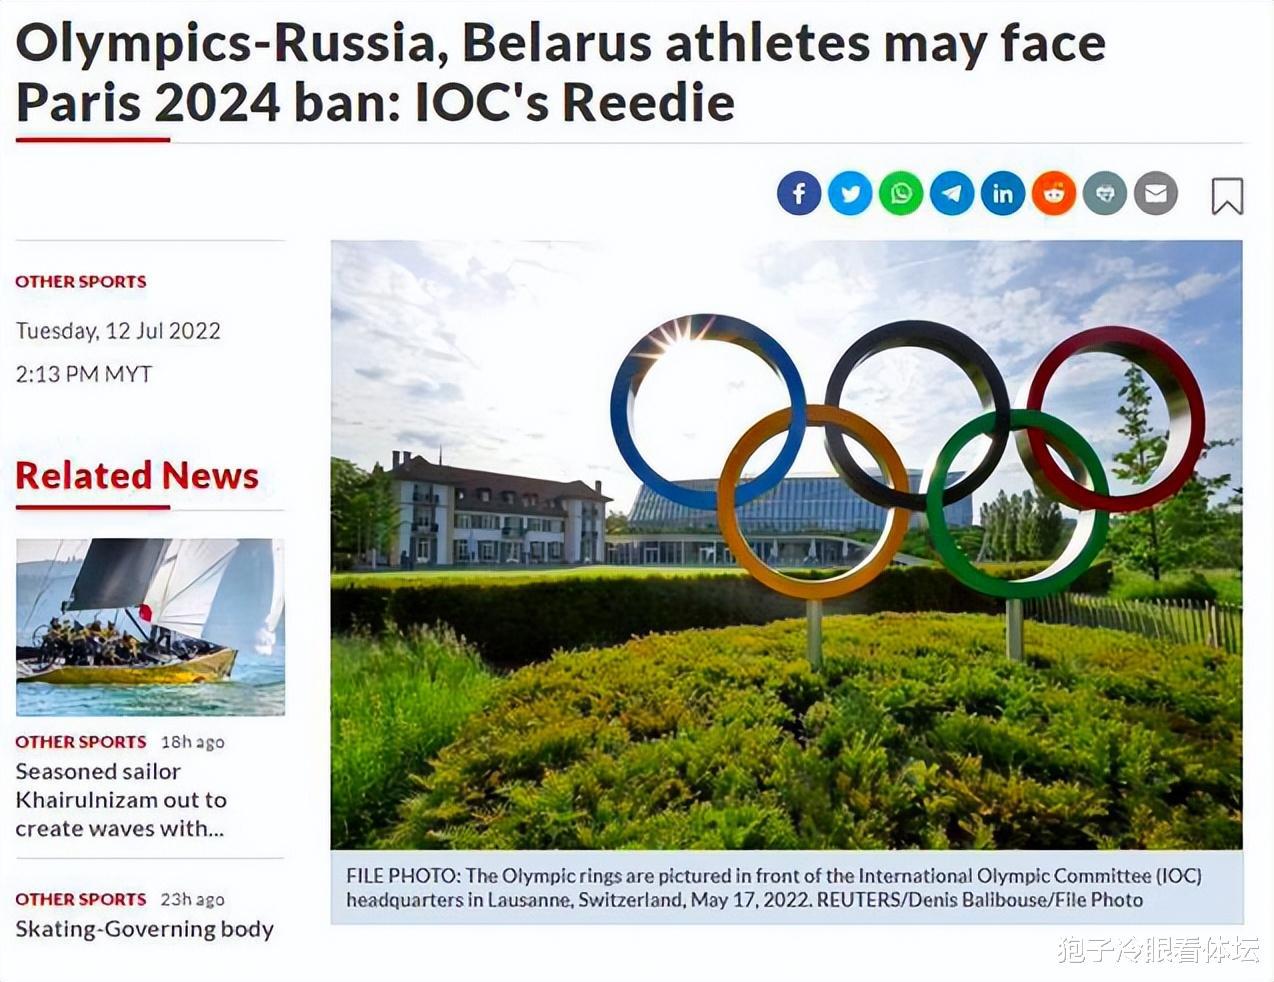 历史金牌数第2！超级体育强国或将被逐出巴黎奥运会 IOC委员详解原委